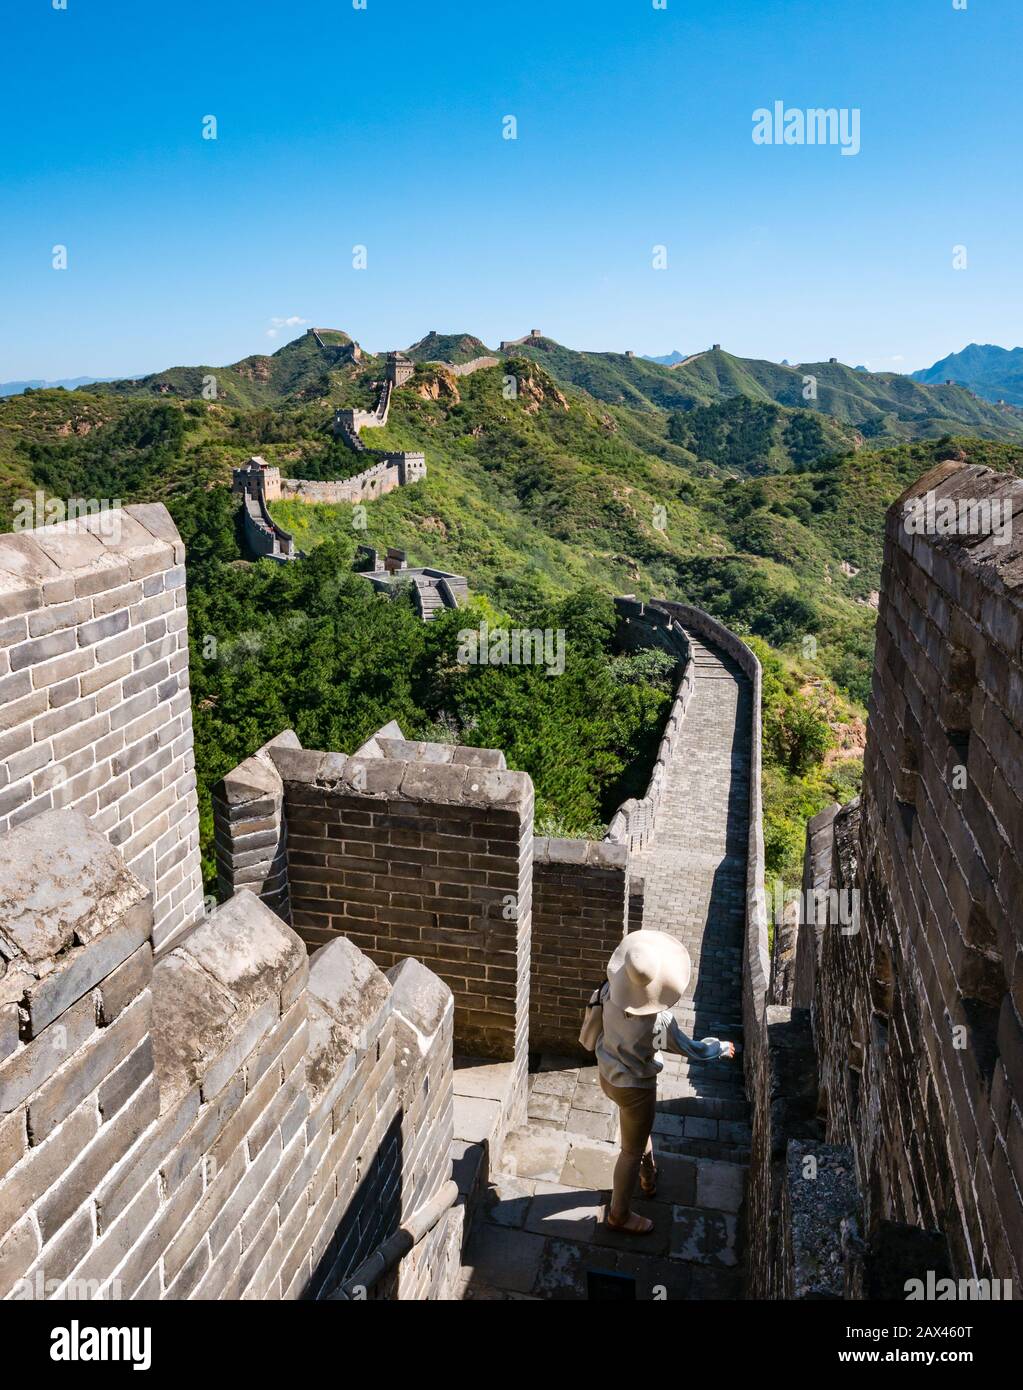 Frau mit breitem Krempelhut Ming-Dynastie Jinshanling Große Mauer von China mit Wachtürmen, die in die Ferne auf dem Bergrücken, China, Asien führen Stockfoto